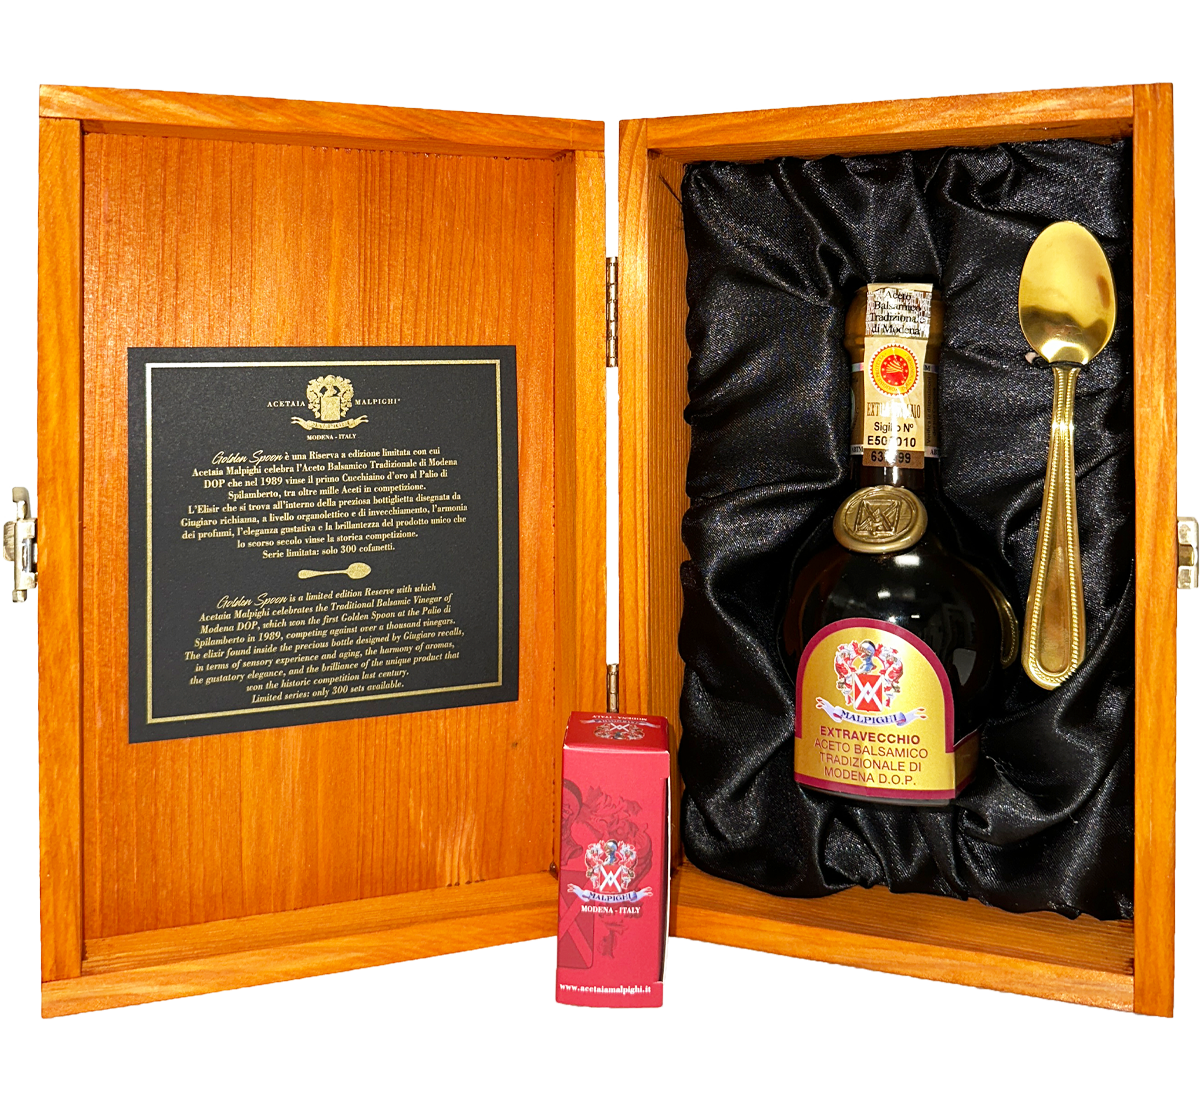 Traditional Balsamic Vinegar of Modena PDO - Extra Vecchio - "Golden Spoon" (100 ml. / 3.38 fl. oz.)